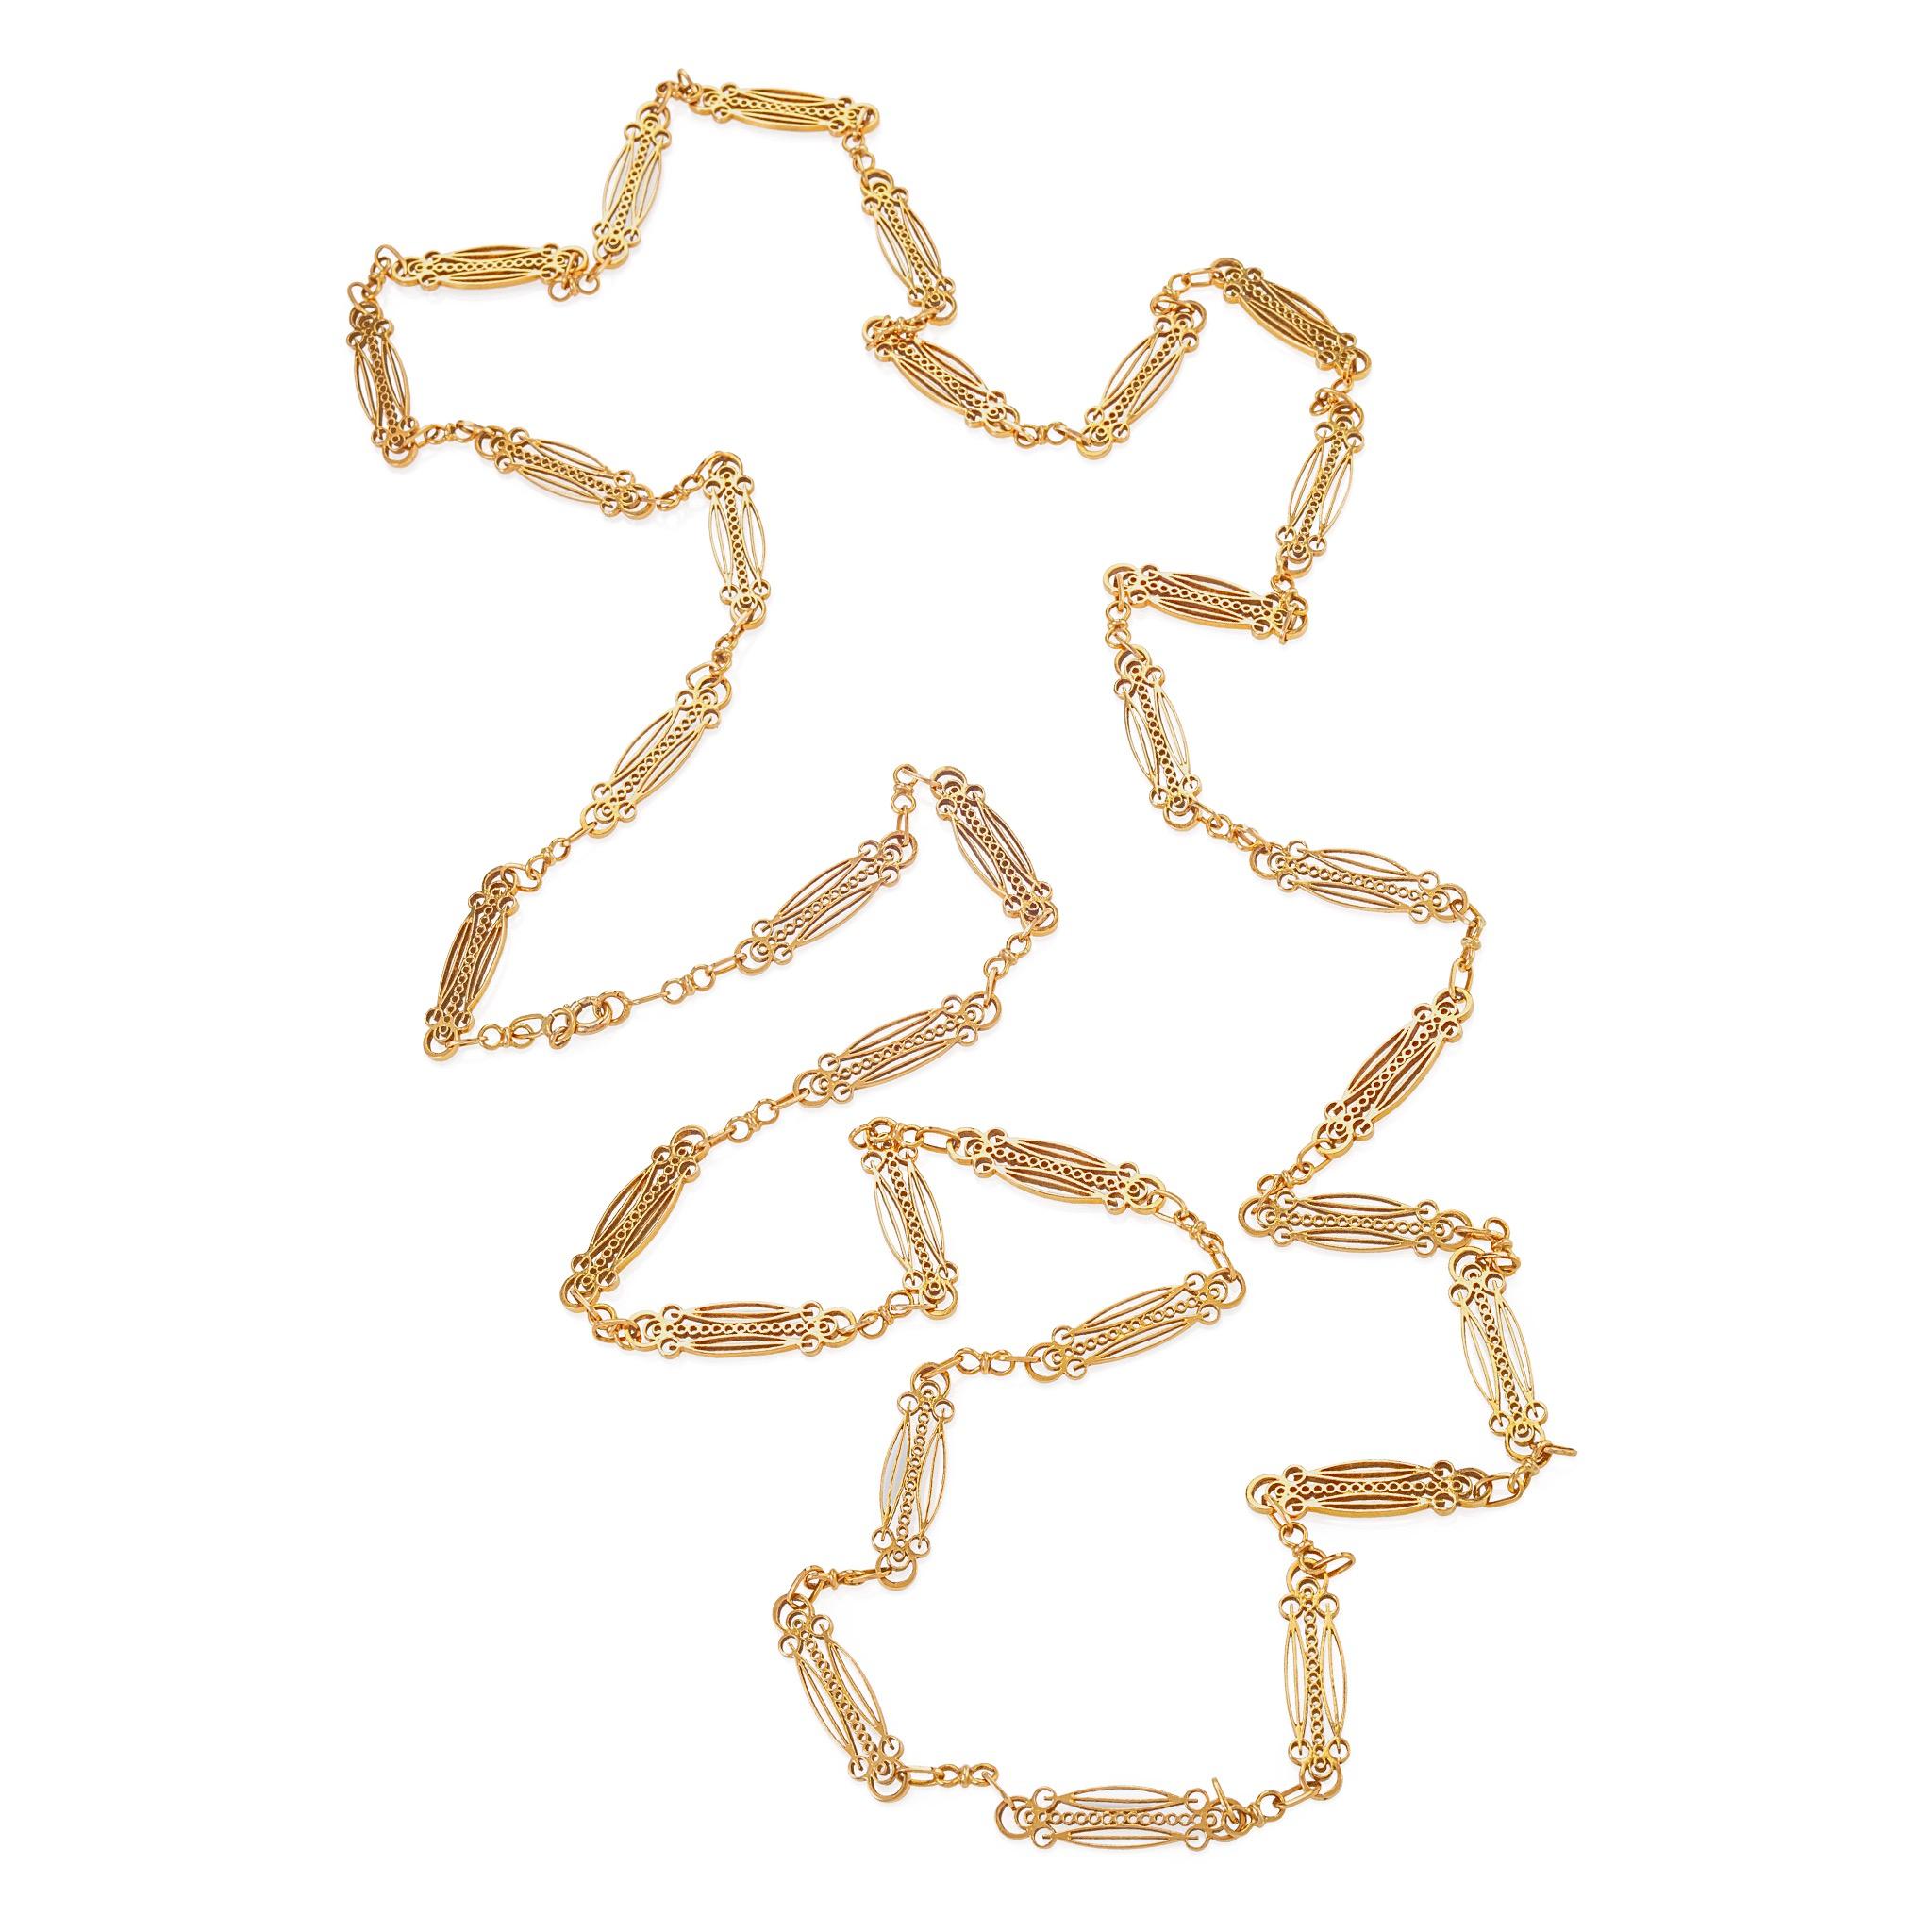 Dieses französische Jugendstil-Halsband mit langer Kette aus Gold wurde um 1900 hergestellt. Die ausgefallenen, länglichen Glieder enthalten jeweils eine ineinander greifende Reihe von kreisförmigen, elliptischen und dreiflügeligen Motiven und sind